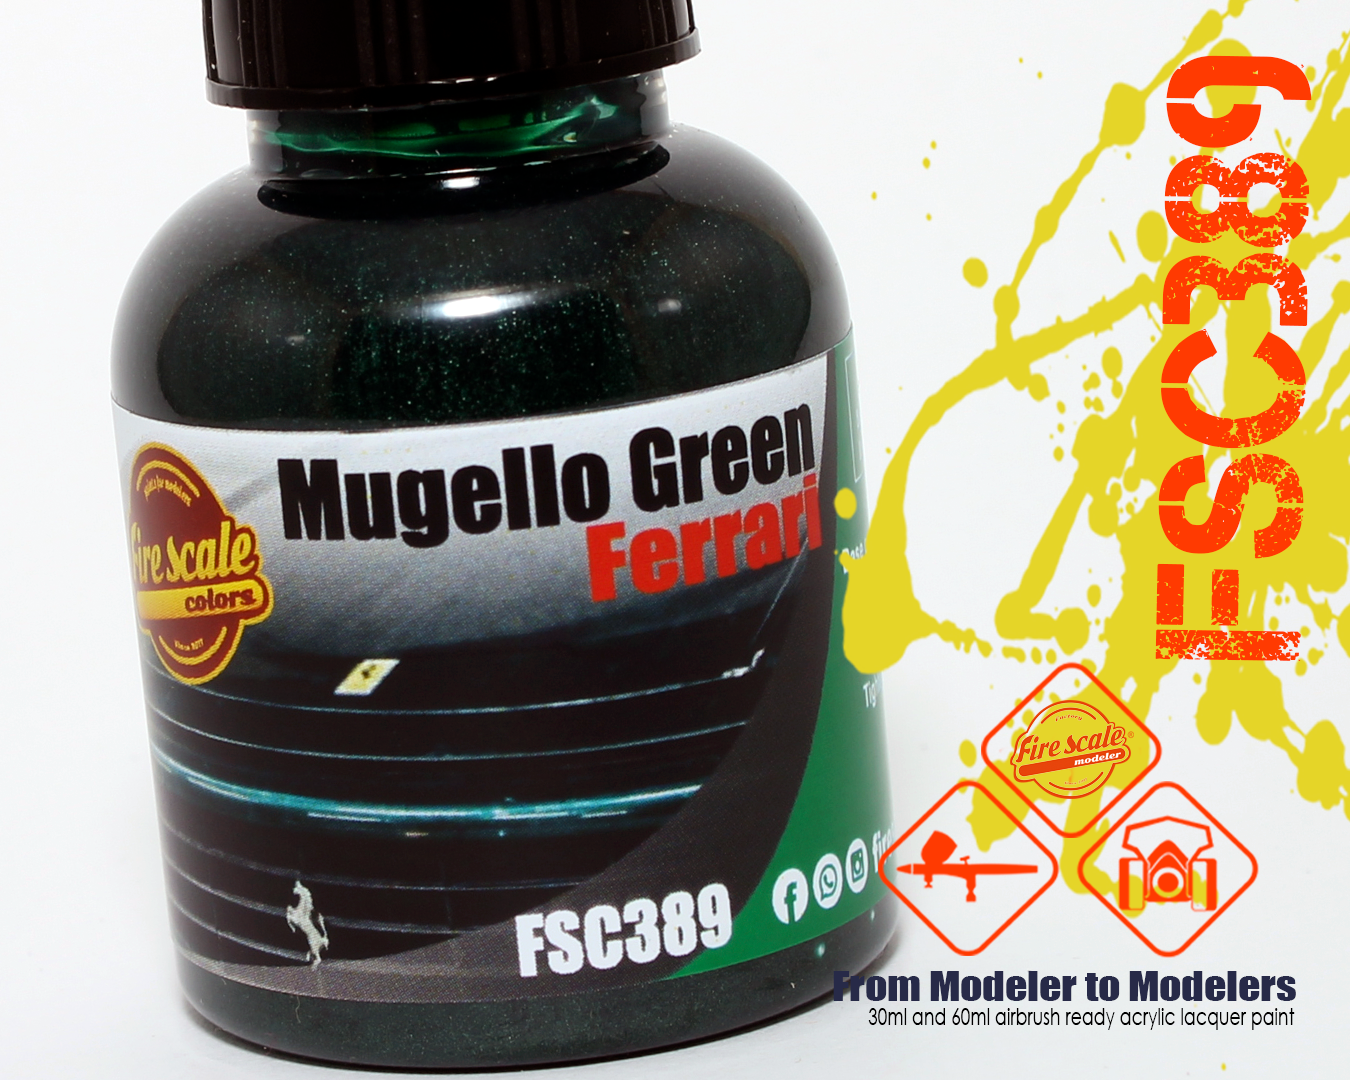 Mugello Green Ferrari